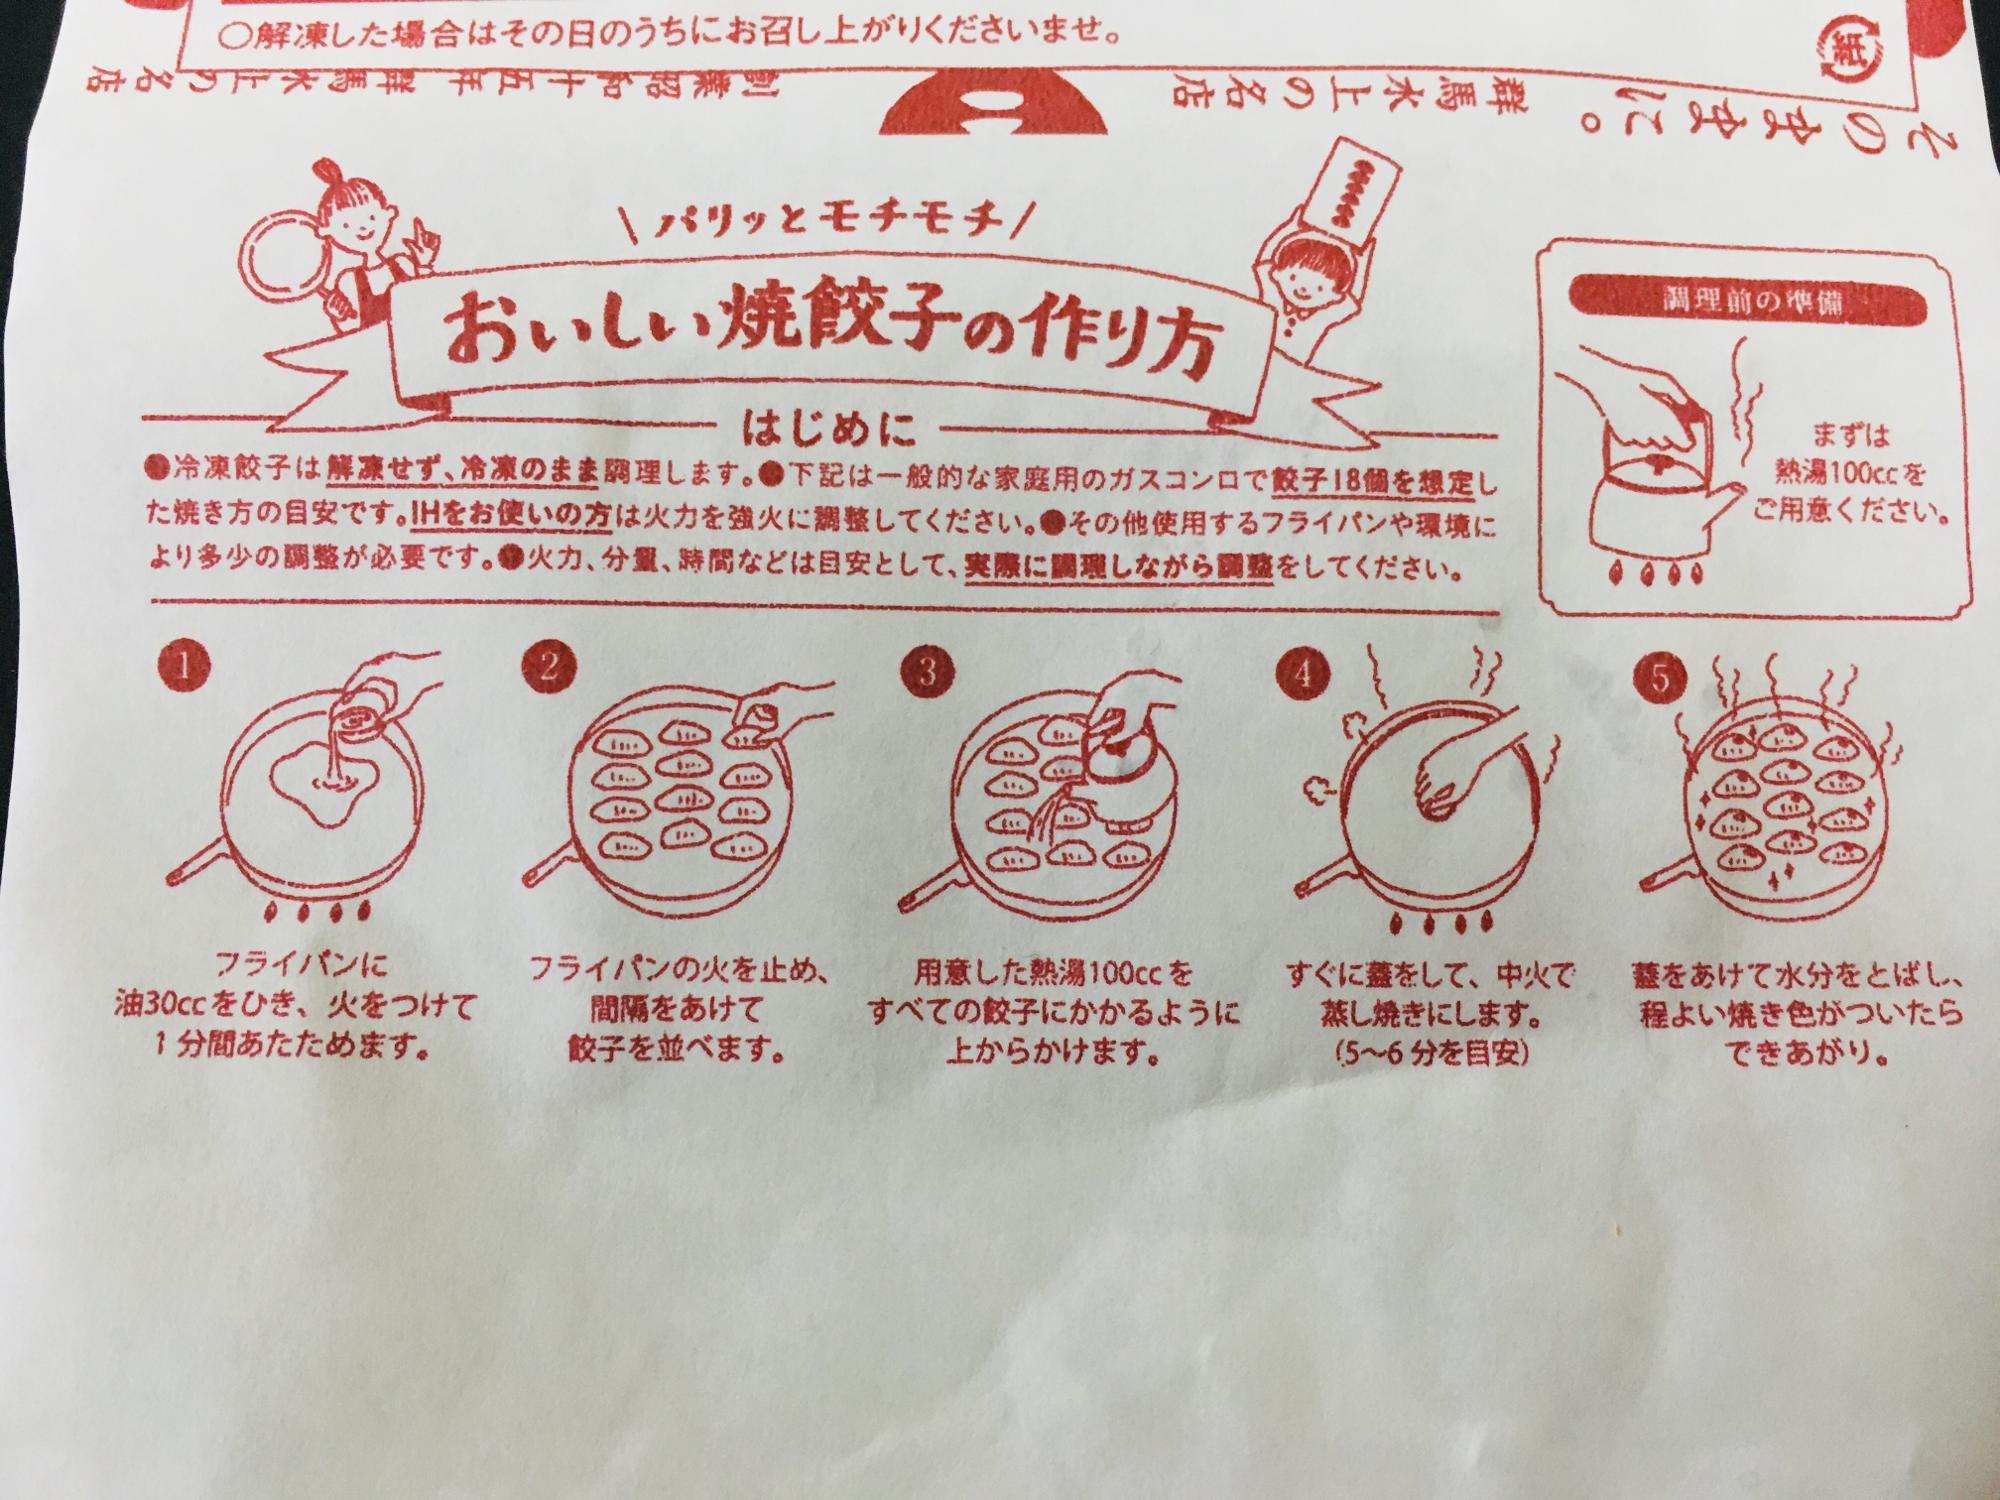 包装紙に記載されている餃子の調理方法